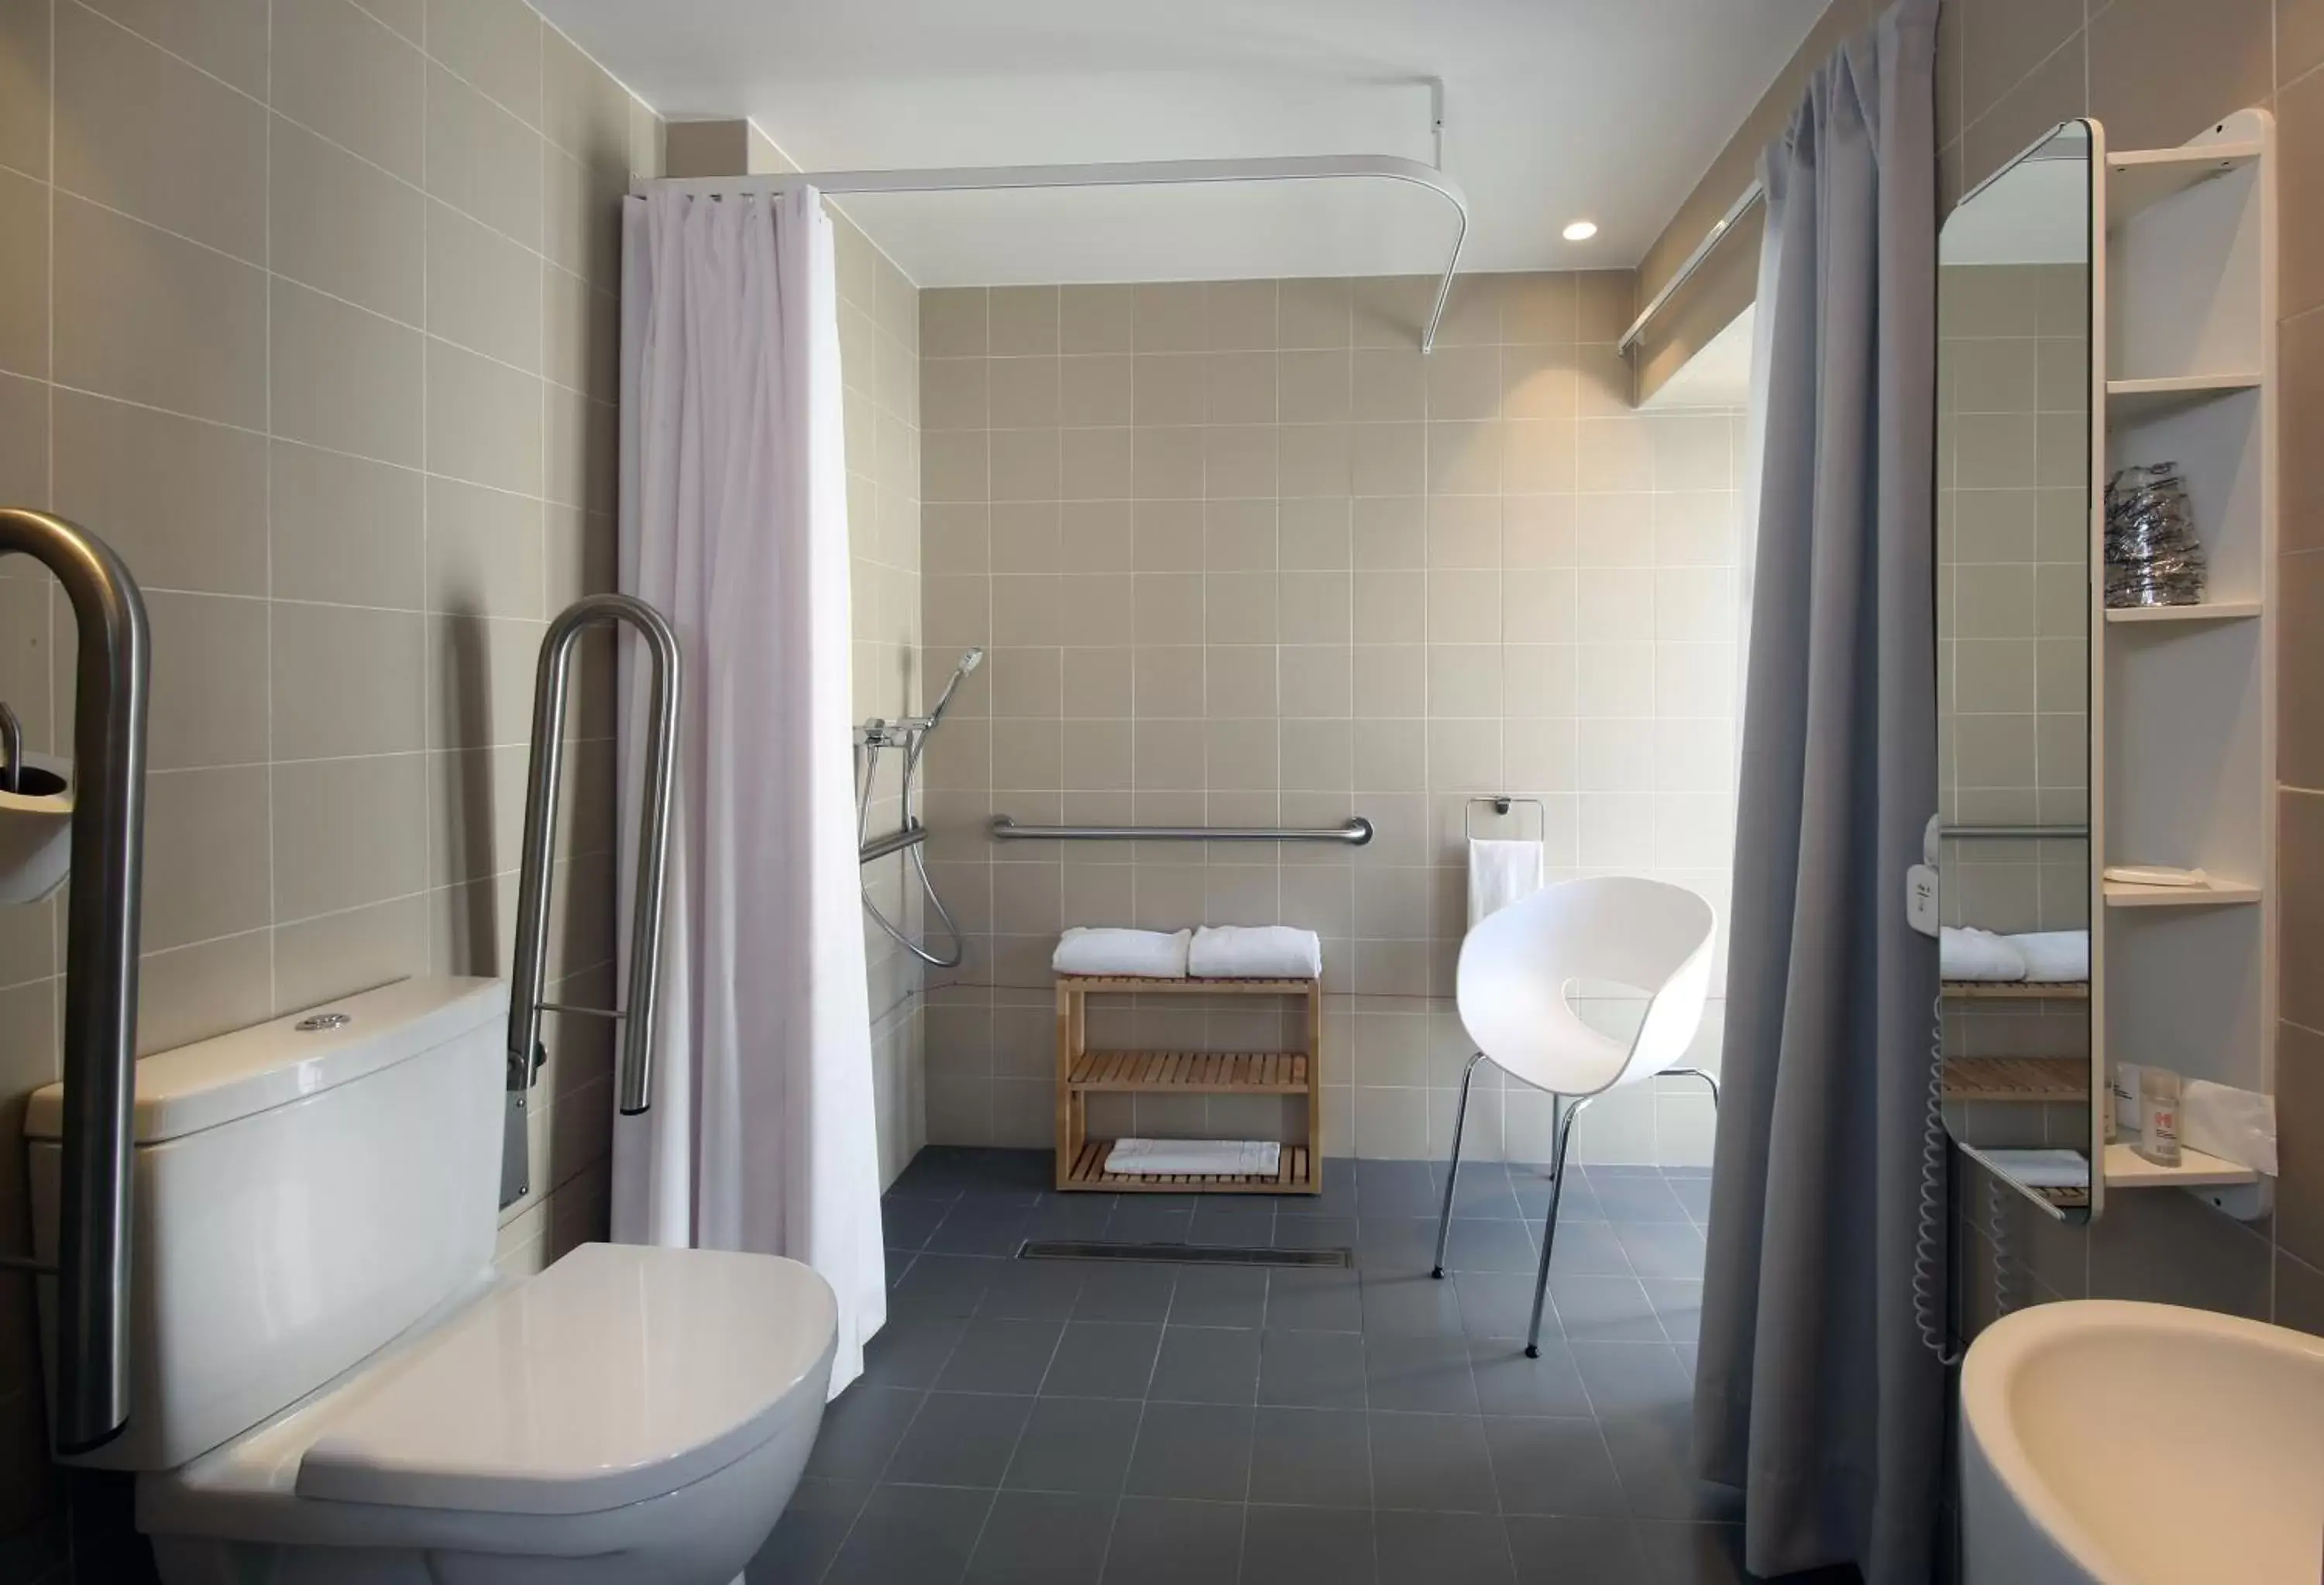 Area and facilities, Bathroom in Hotel Convento do Salvador